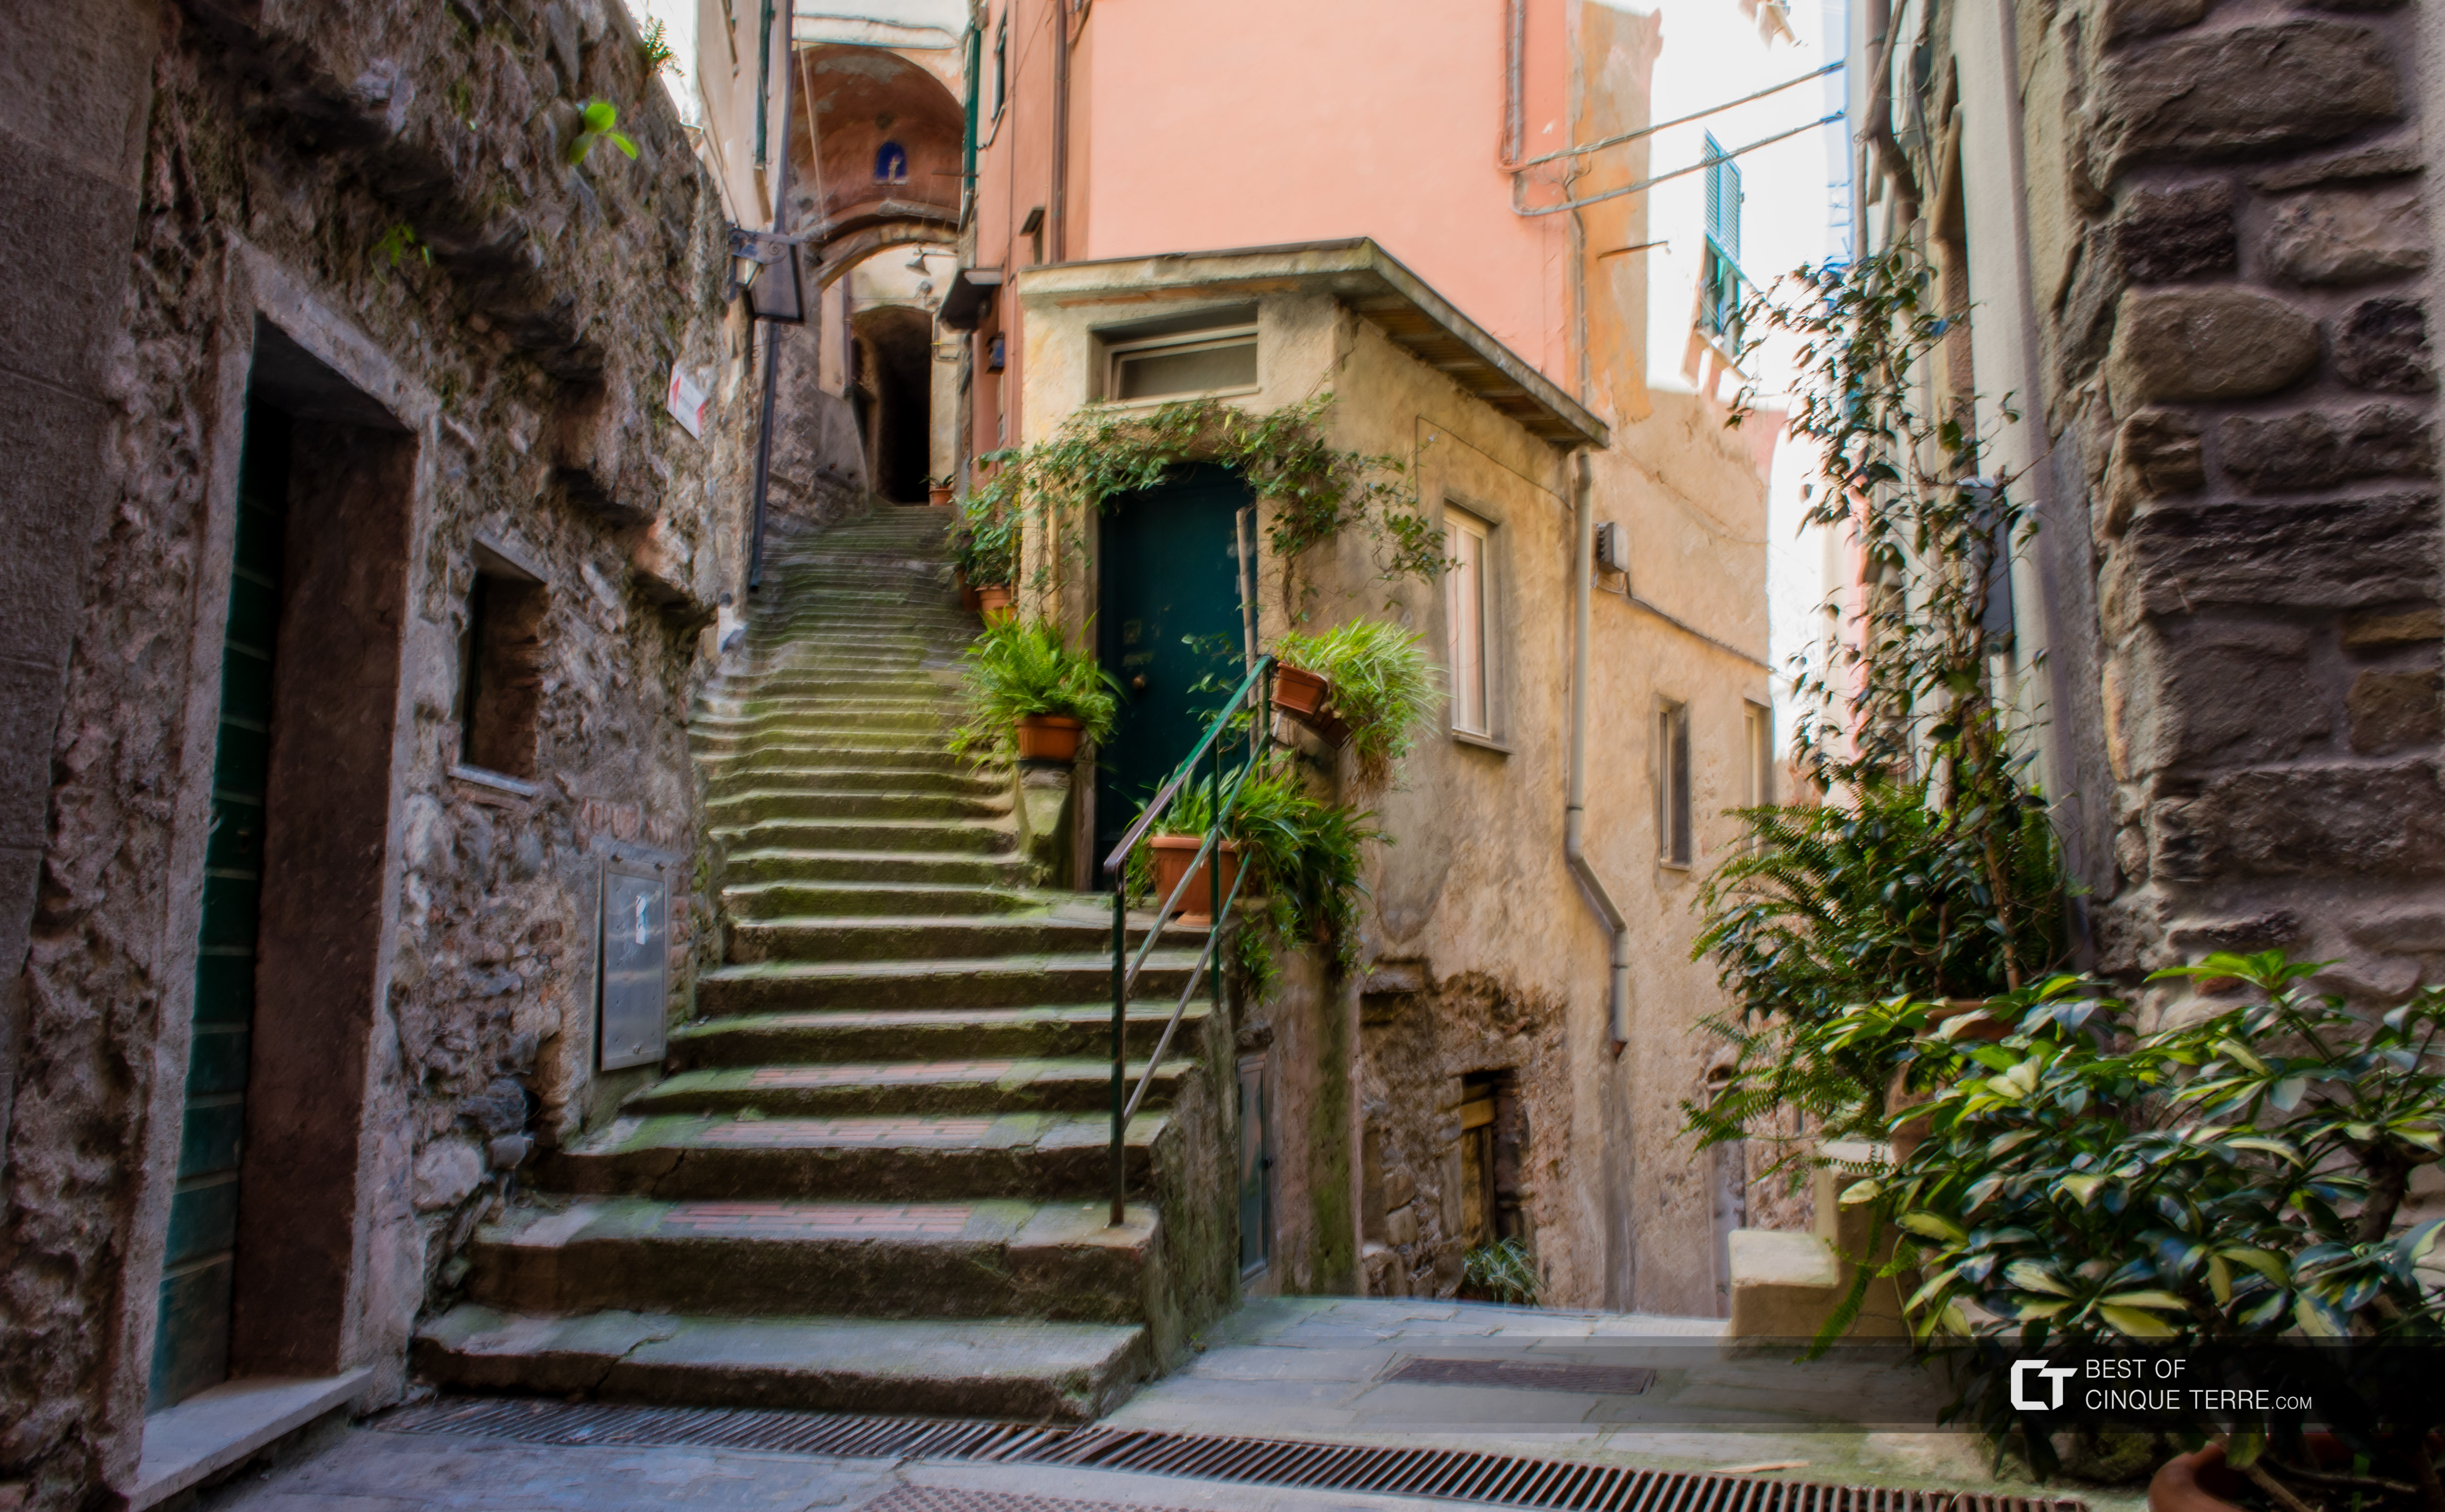 Le incantevoli stradine, Vernazza, Cinque Terre, Italia